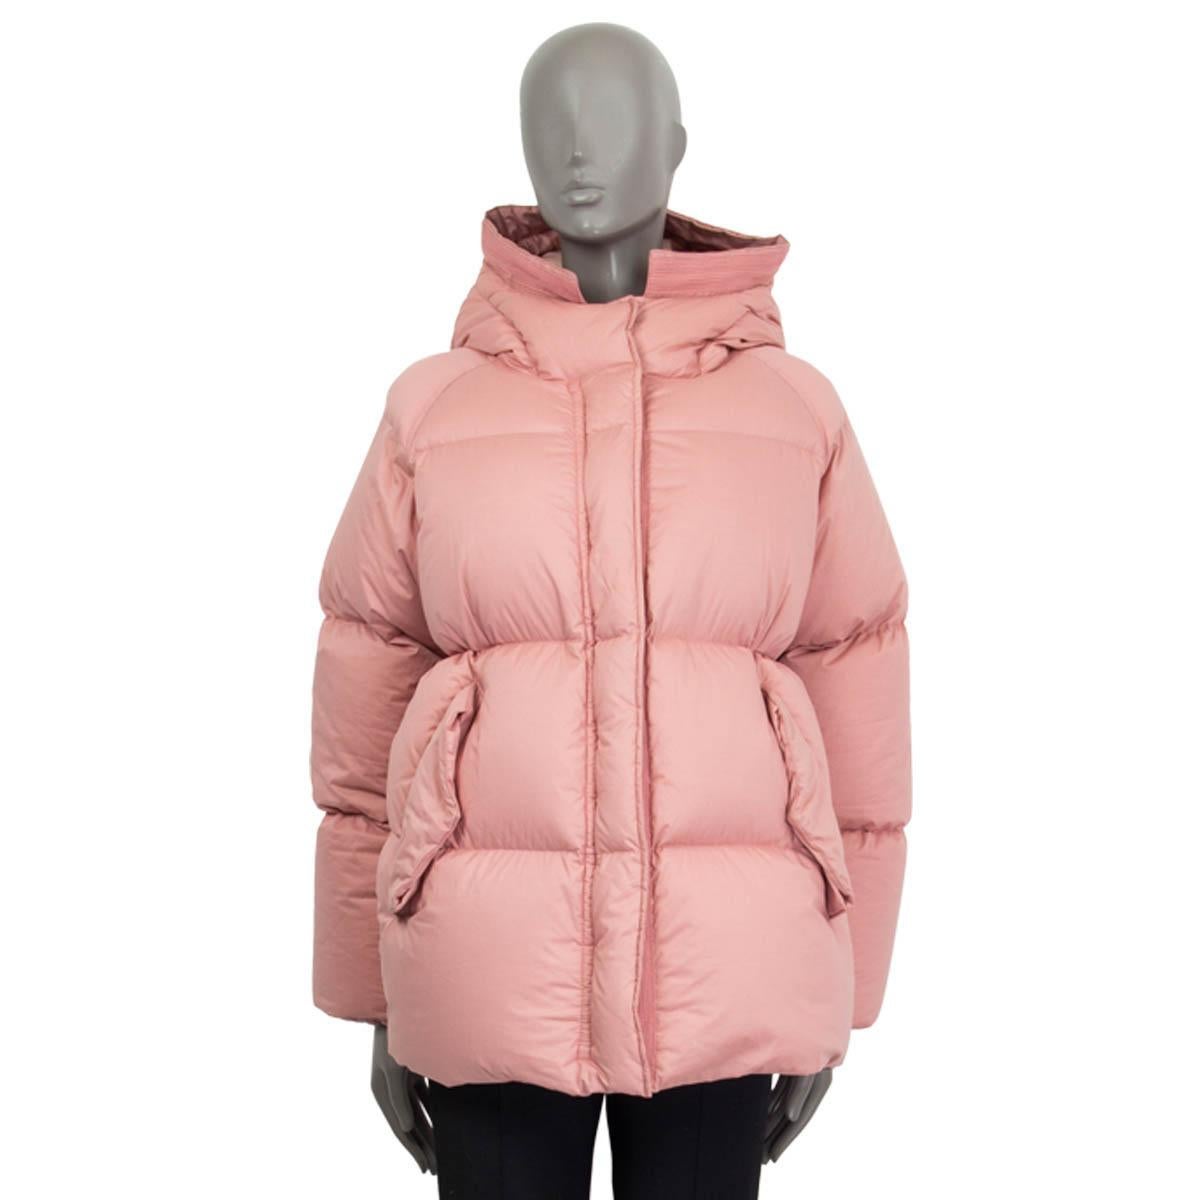 light pink puffer jacket